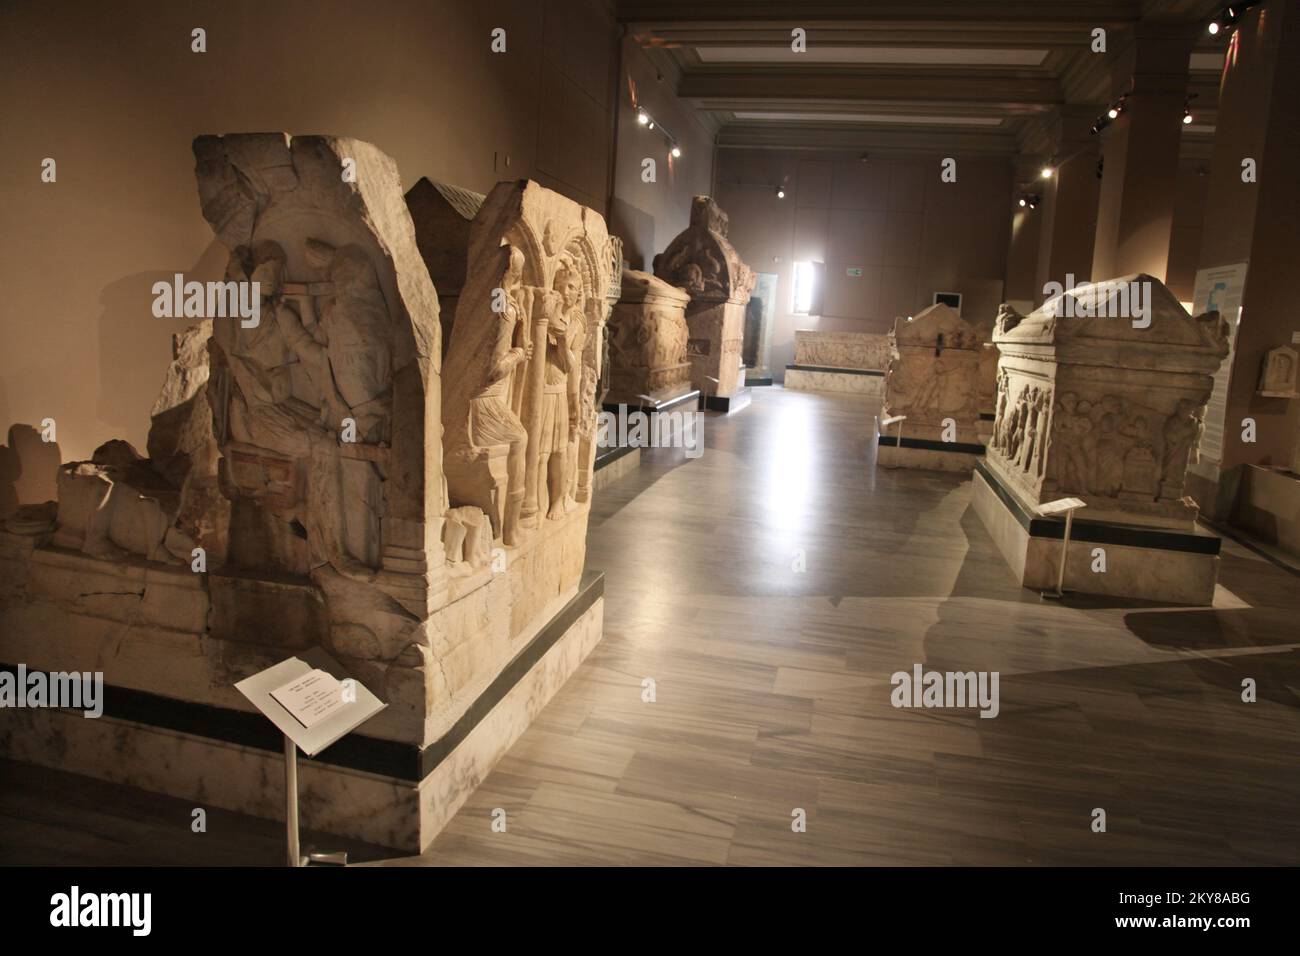 Musée d'archéologie d'Istanbul salle de sarcophage à Istanbul, Turquie. Musée plus d'un million d'objets qui représentent presque toutes les époques de l'histoire du monde Banque D'Images